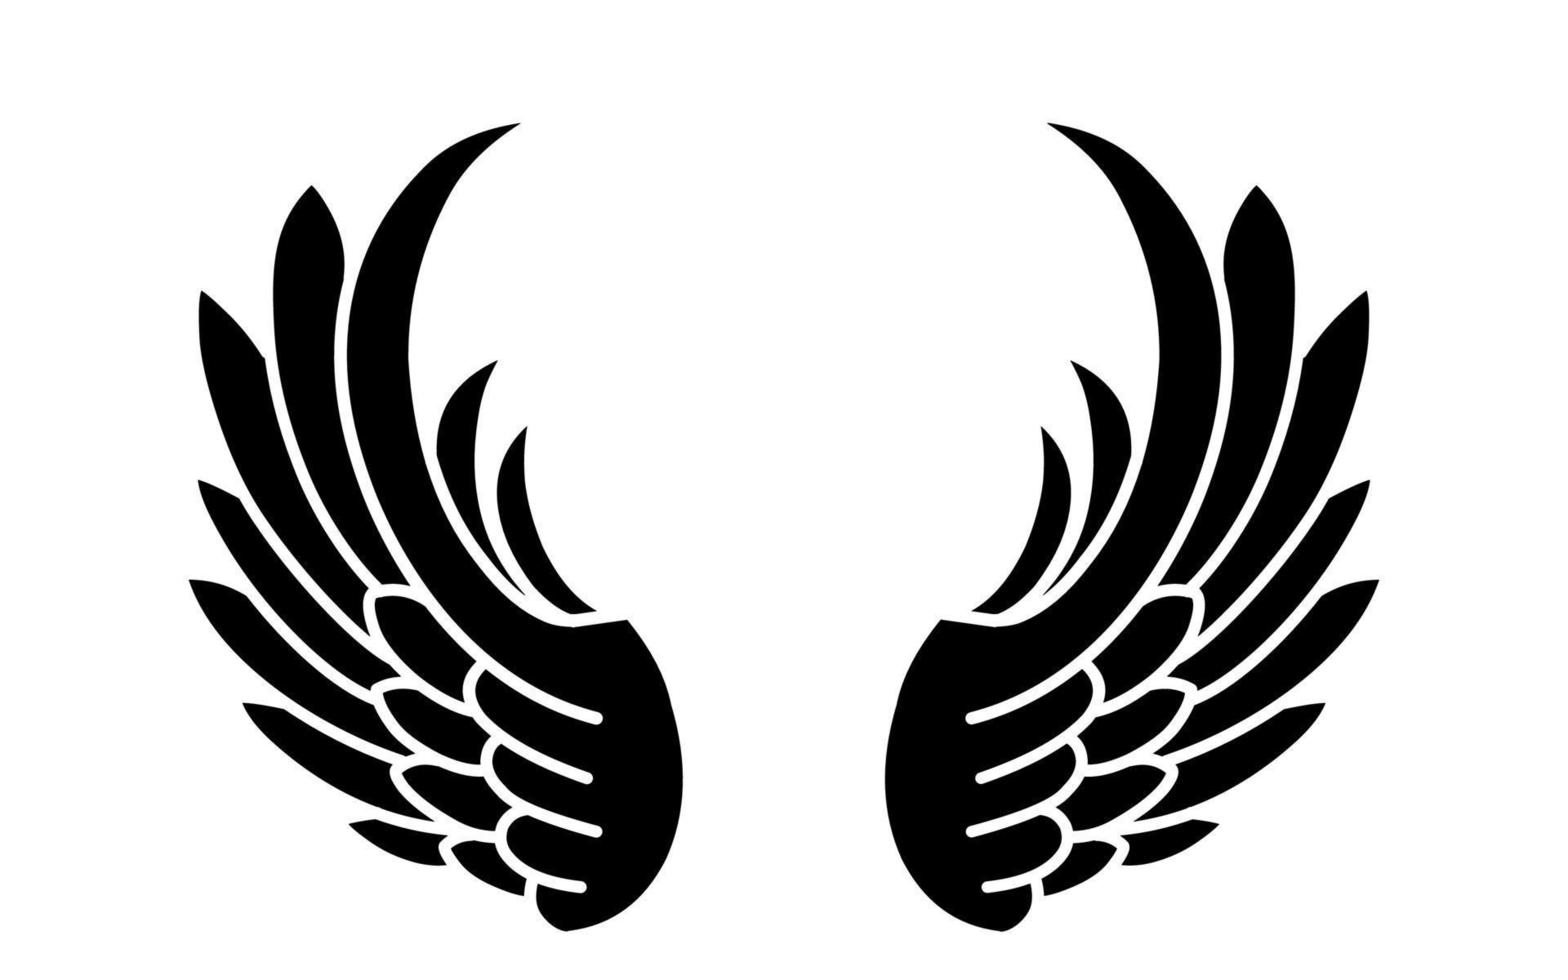 tatuagem de asas de anjo vetor livre